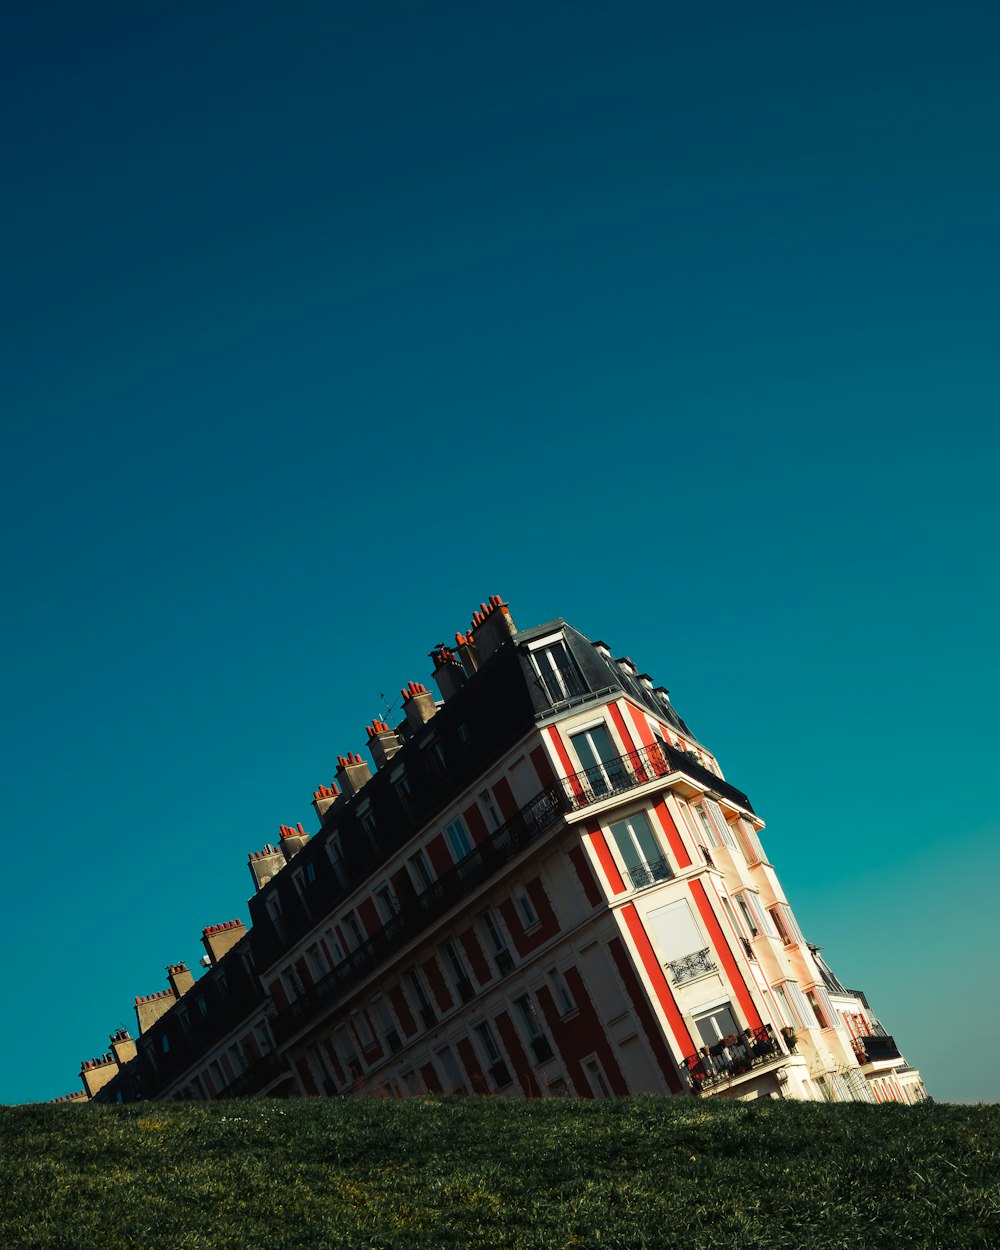 청록색 하늘 아래 흰색과 빨간색 콘크리트 건물